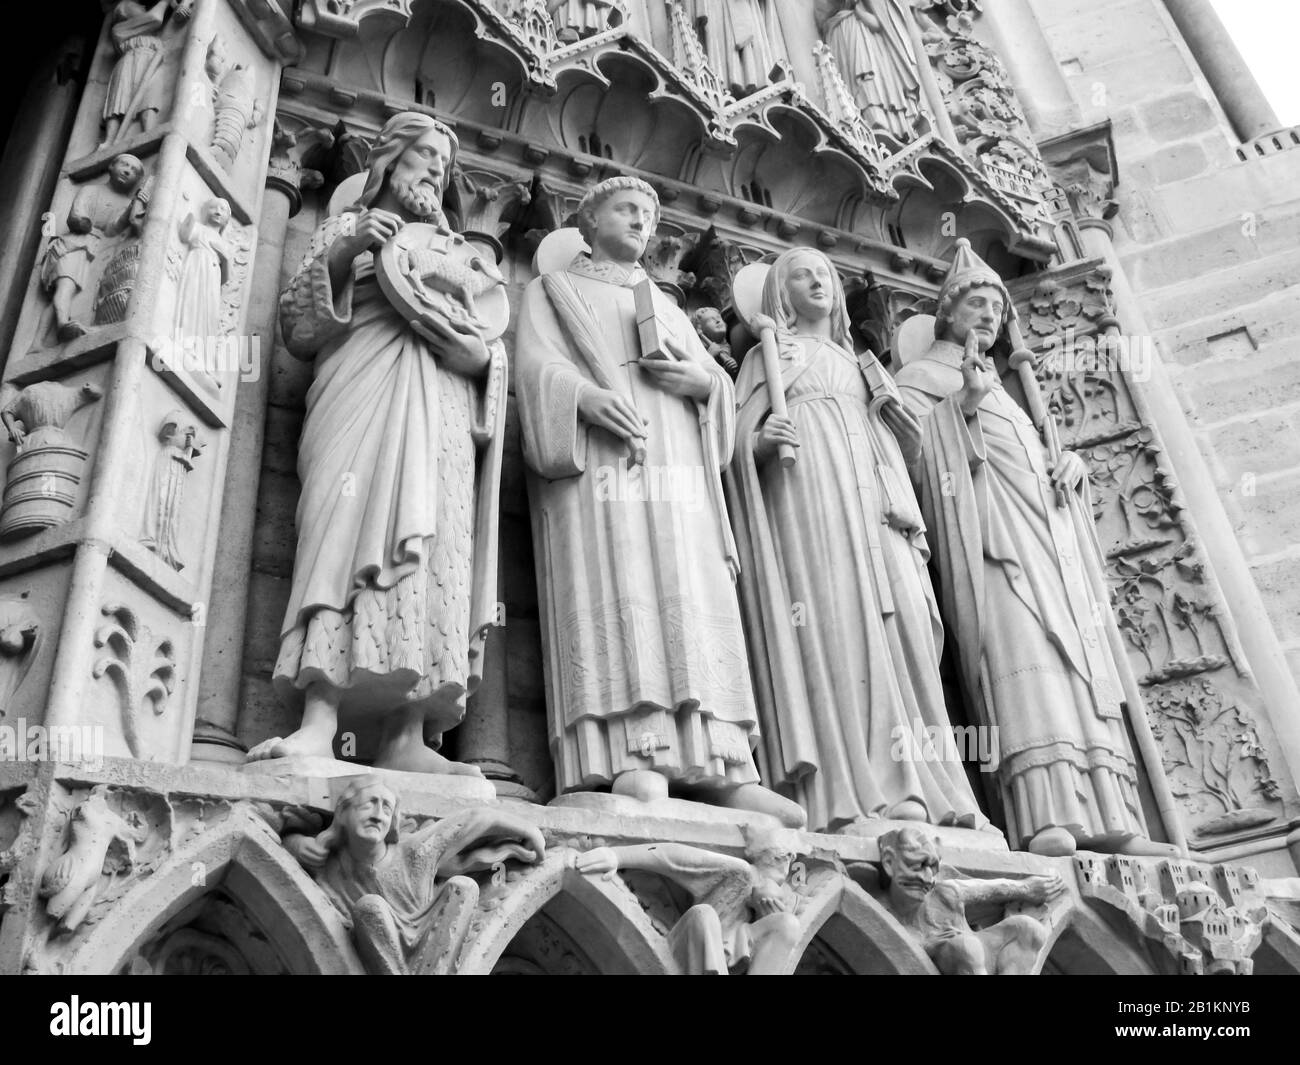 Skulpturen von verschiedenen Heiligen am Haupteingang an der westlichen façade der Kathedrale Notre-Dame, fotografiert in Monochrom in Paris, Frankreich Stockfoto